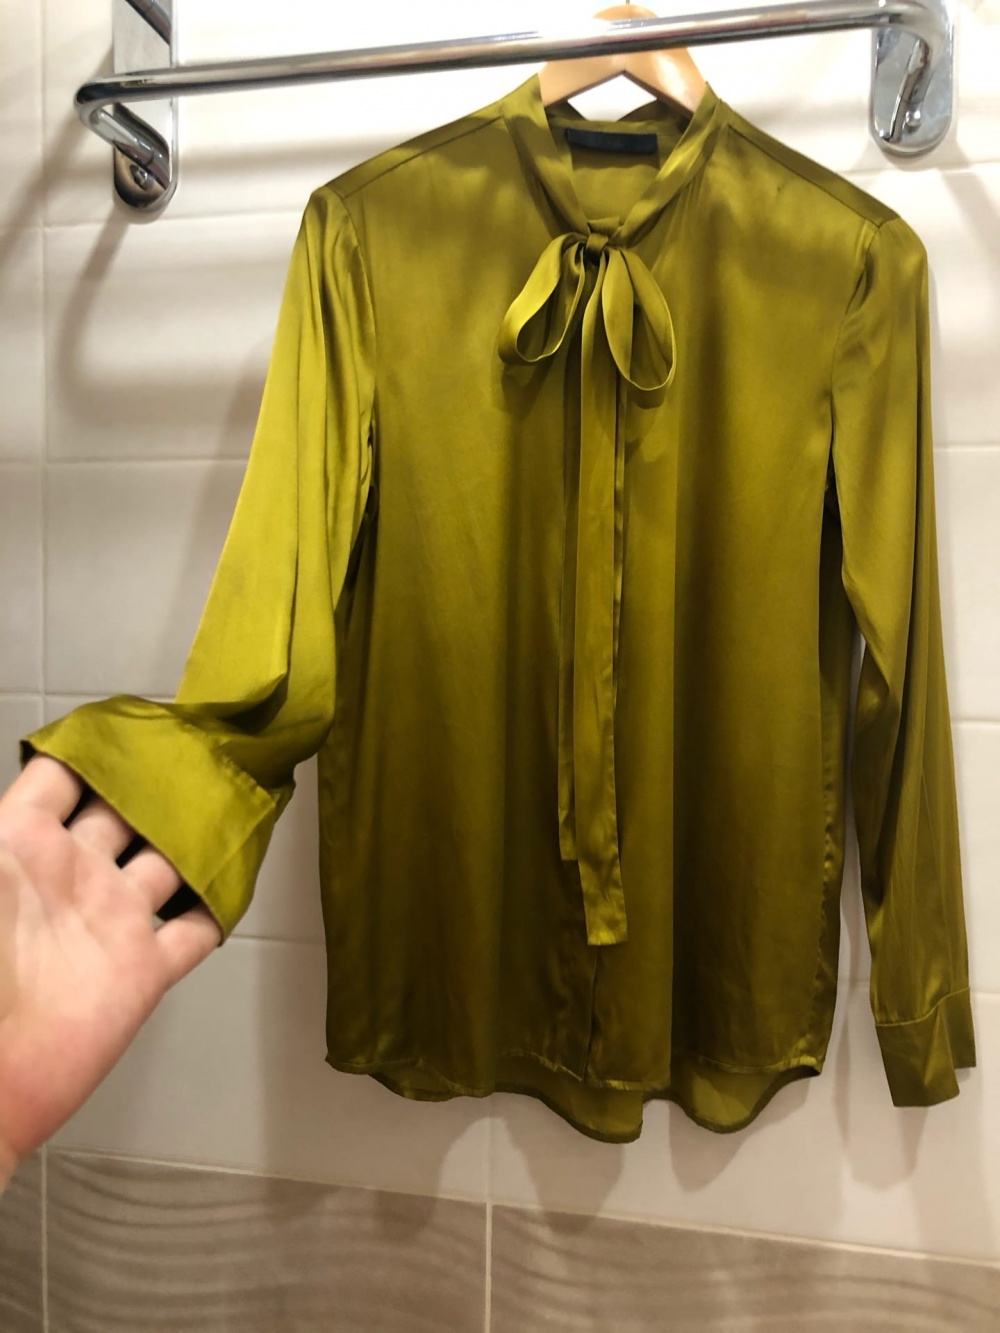 Шелковая блузка FFC.Размер M-L.